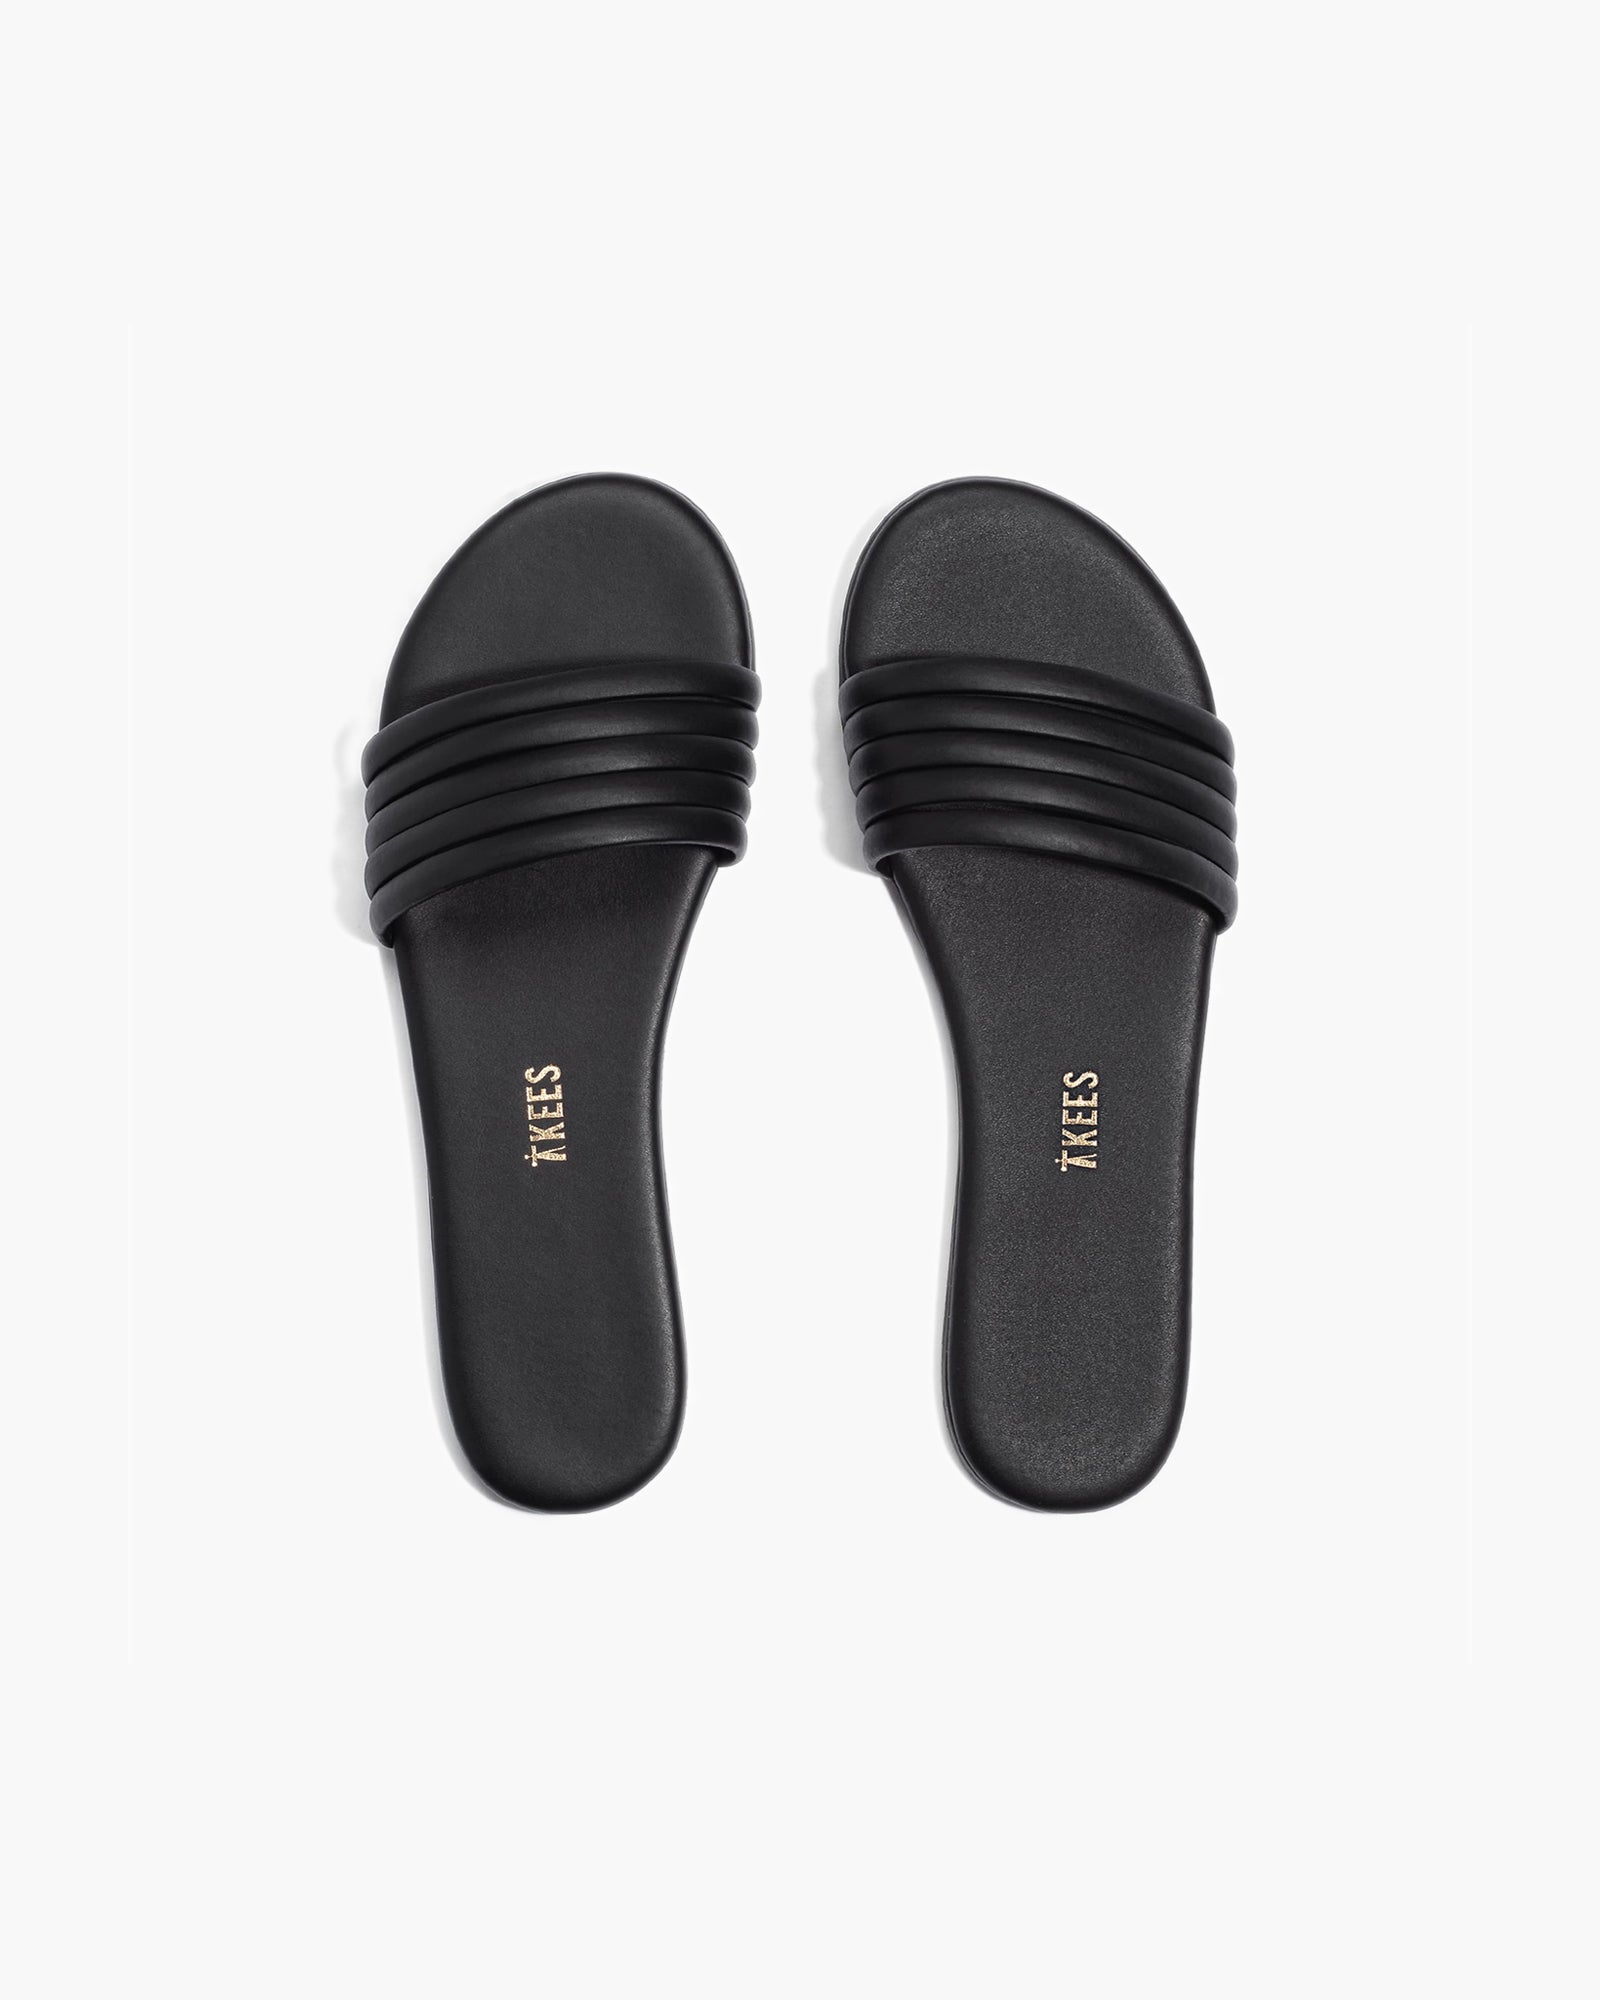 Serena in Black | Sandals | Women's Footwear – TKEES